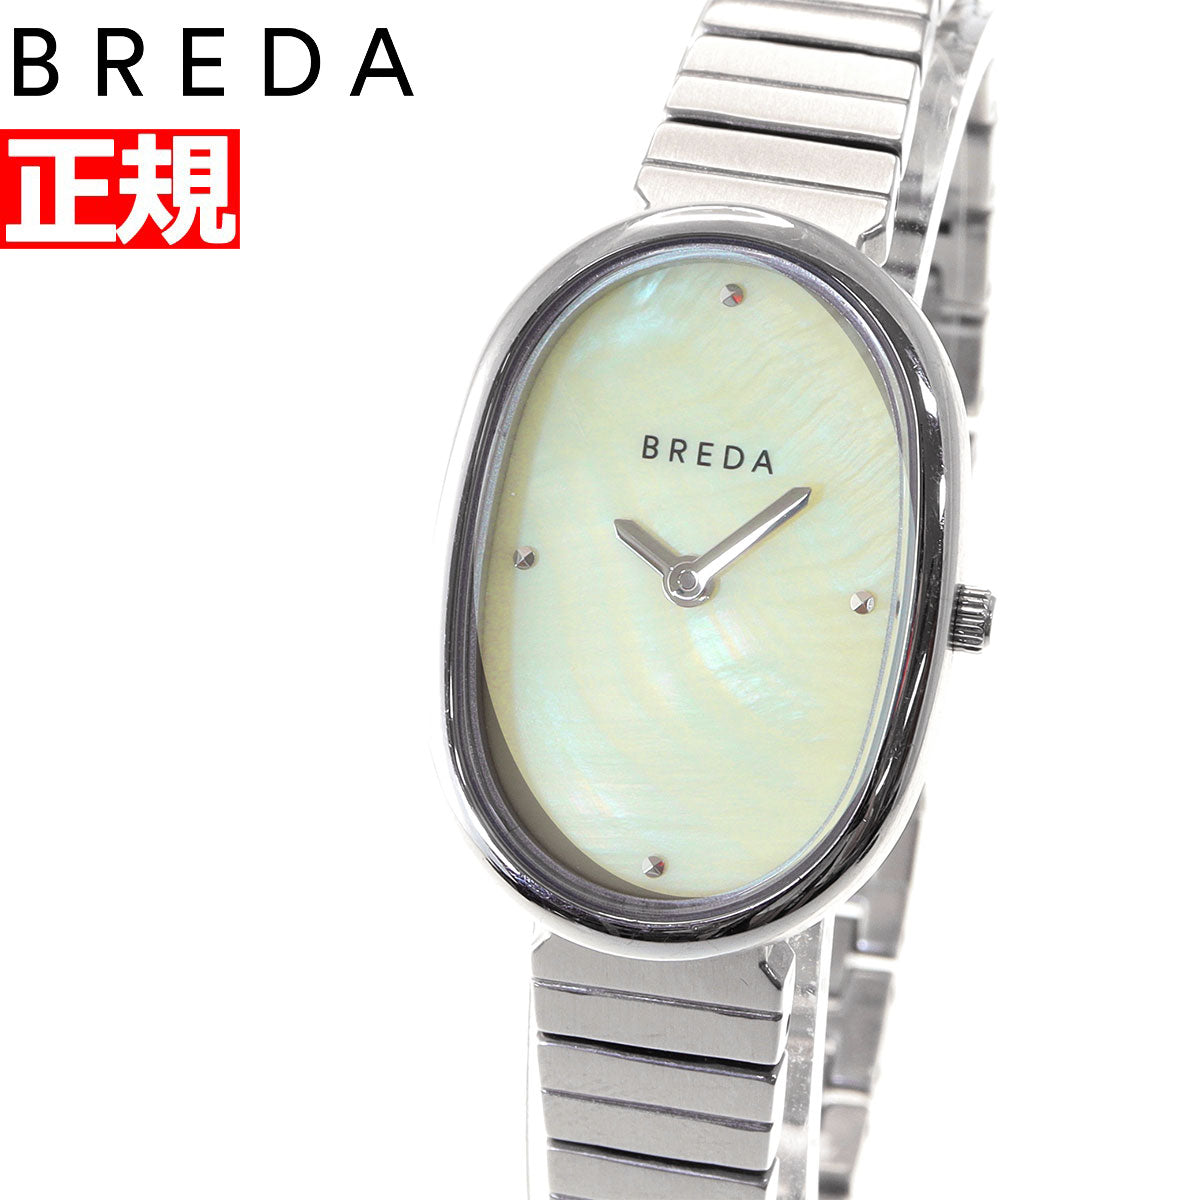 ブレダ BREDA 腕時計 レディース ジェーン JANE 1741a – neel selectshop